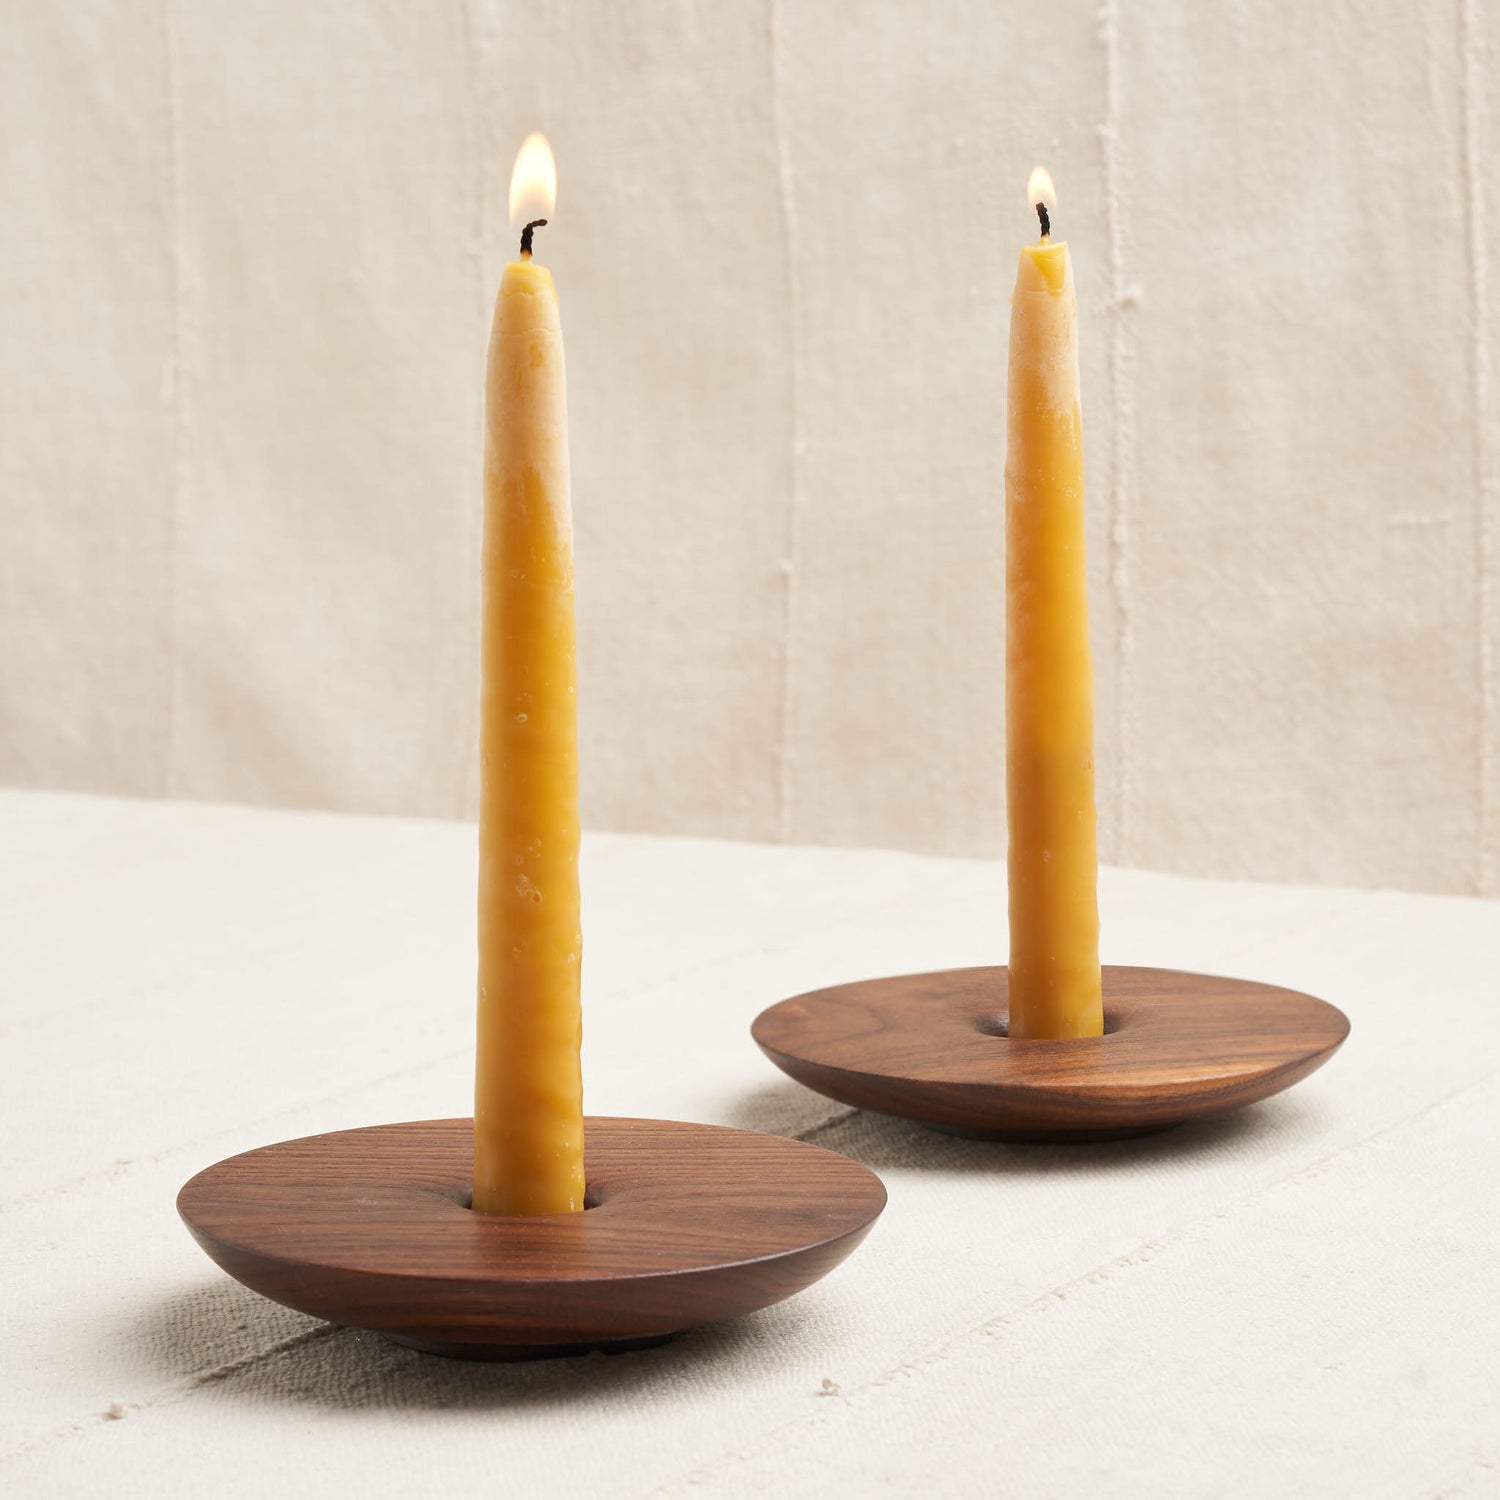 https://housework.store/cdn/shop/products/de-jong-co-walnut-wood-candlestick-holders-1.jpg?v=1617395850&width=1500